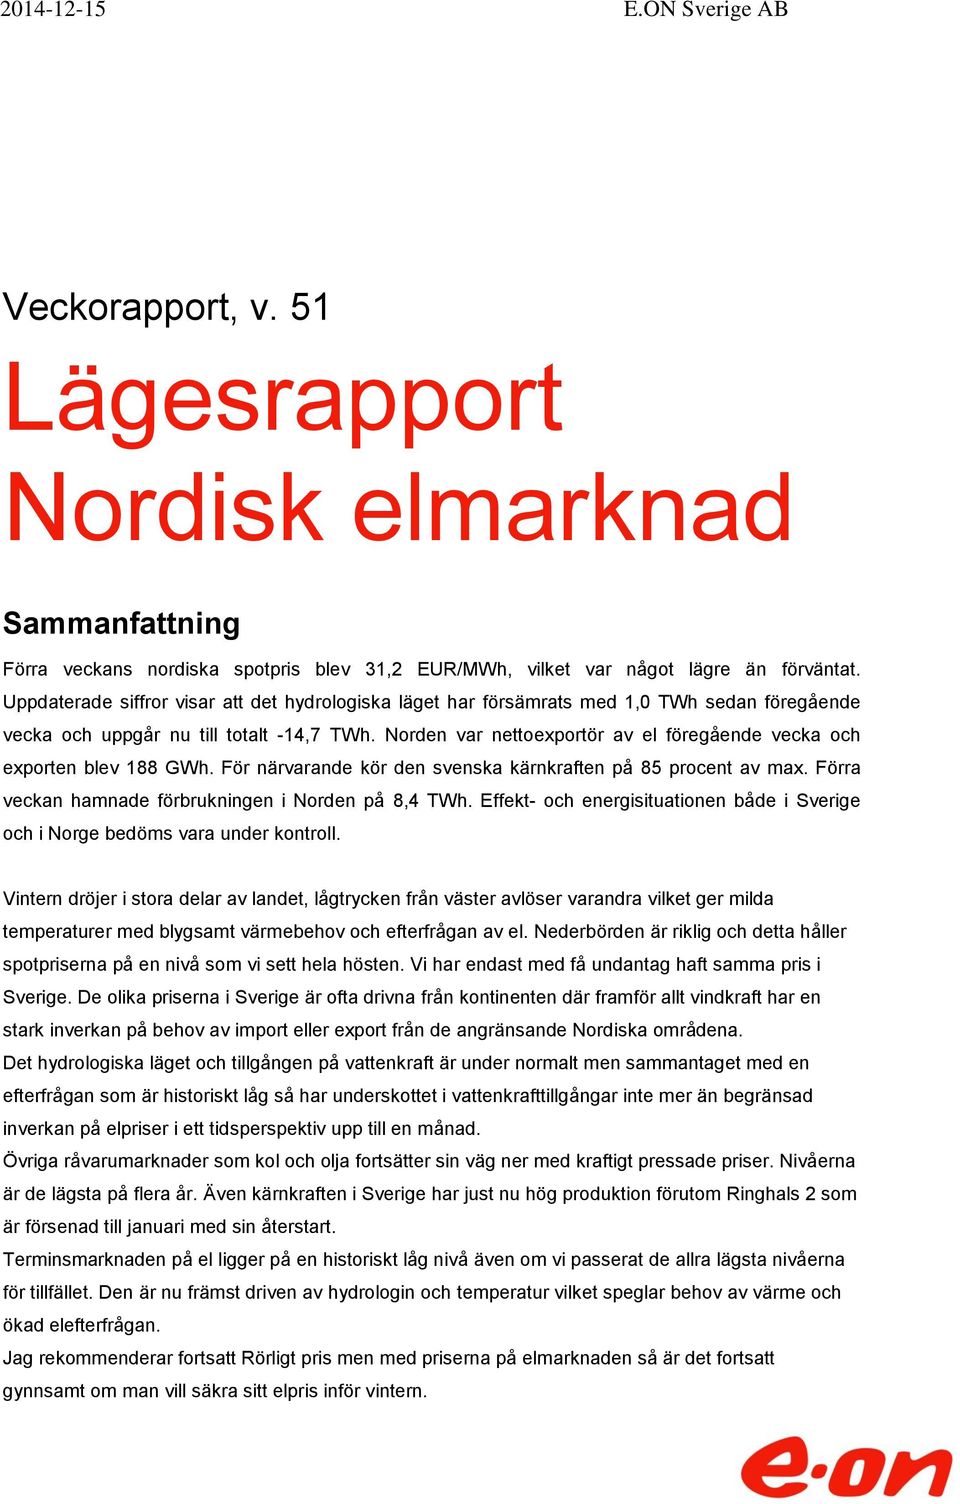 Norden var nettoexportör av el föregående vecka och exporten blev 188 GWh. För närvarande kör den svenska kärnkraften på 85 procent av max. Förra veckan hamnade förbrukningen i Norden på 8,4 TWh.